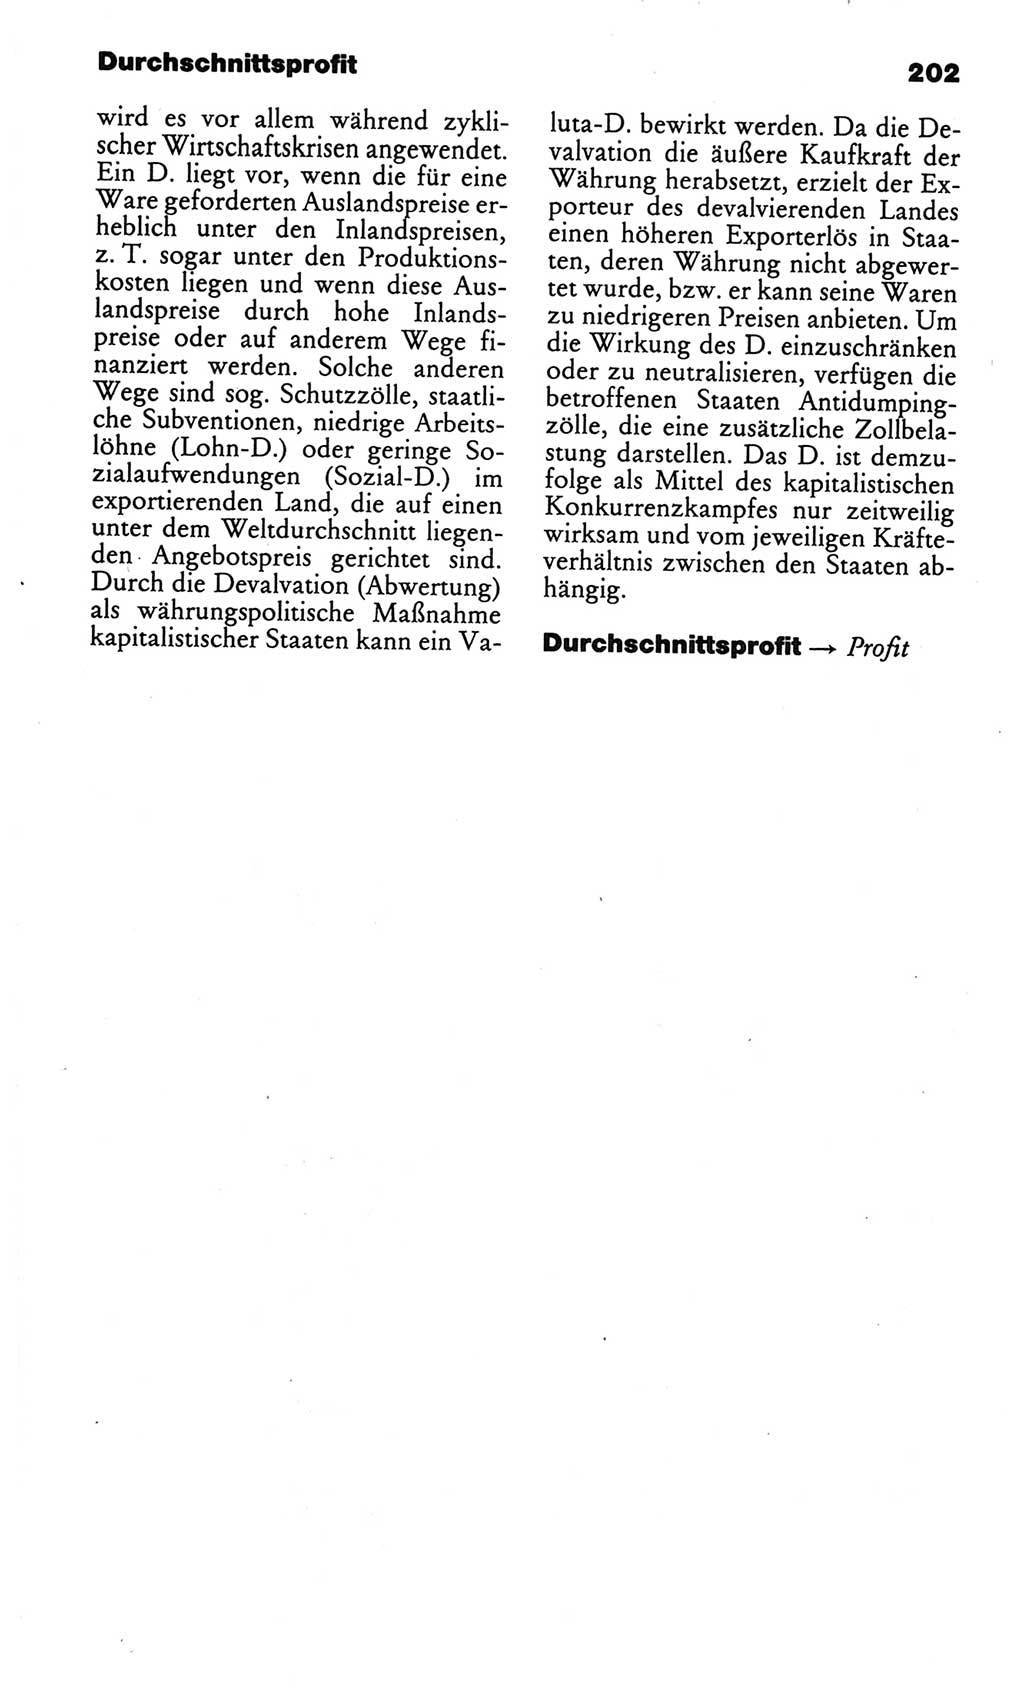 Kleines politisches Wörterbuch [Deutsche Demokratische Republik (DDR)] 1986, Seite 202 (Kl. pol. Wb. DDR 1986, S. 202)